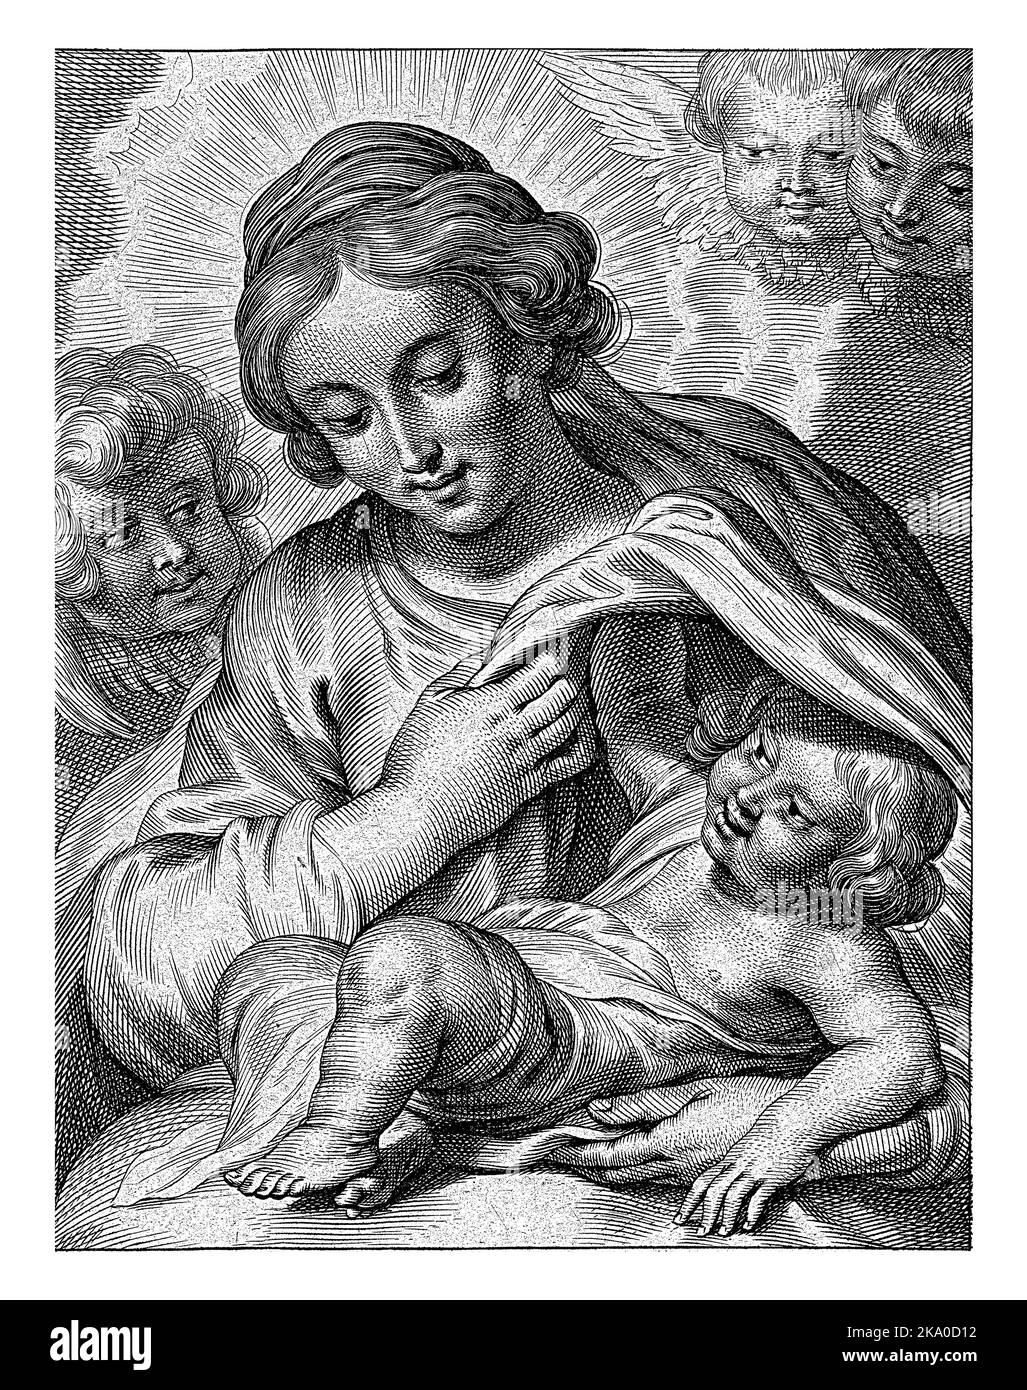 Maria mit Kind und Cherubim. Unterhalb der Aufführung ist der lateinische Aufruf zur Fürbitte S Maria, ora pro nobis. Stockfoto